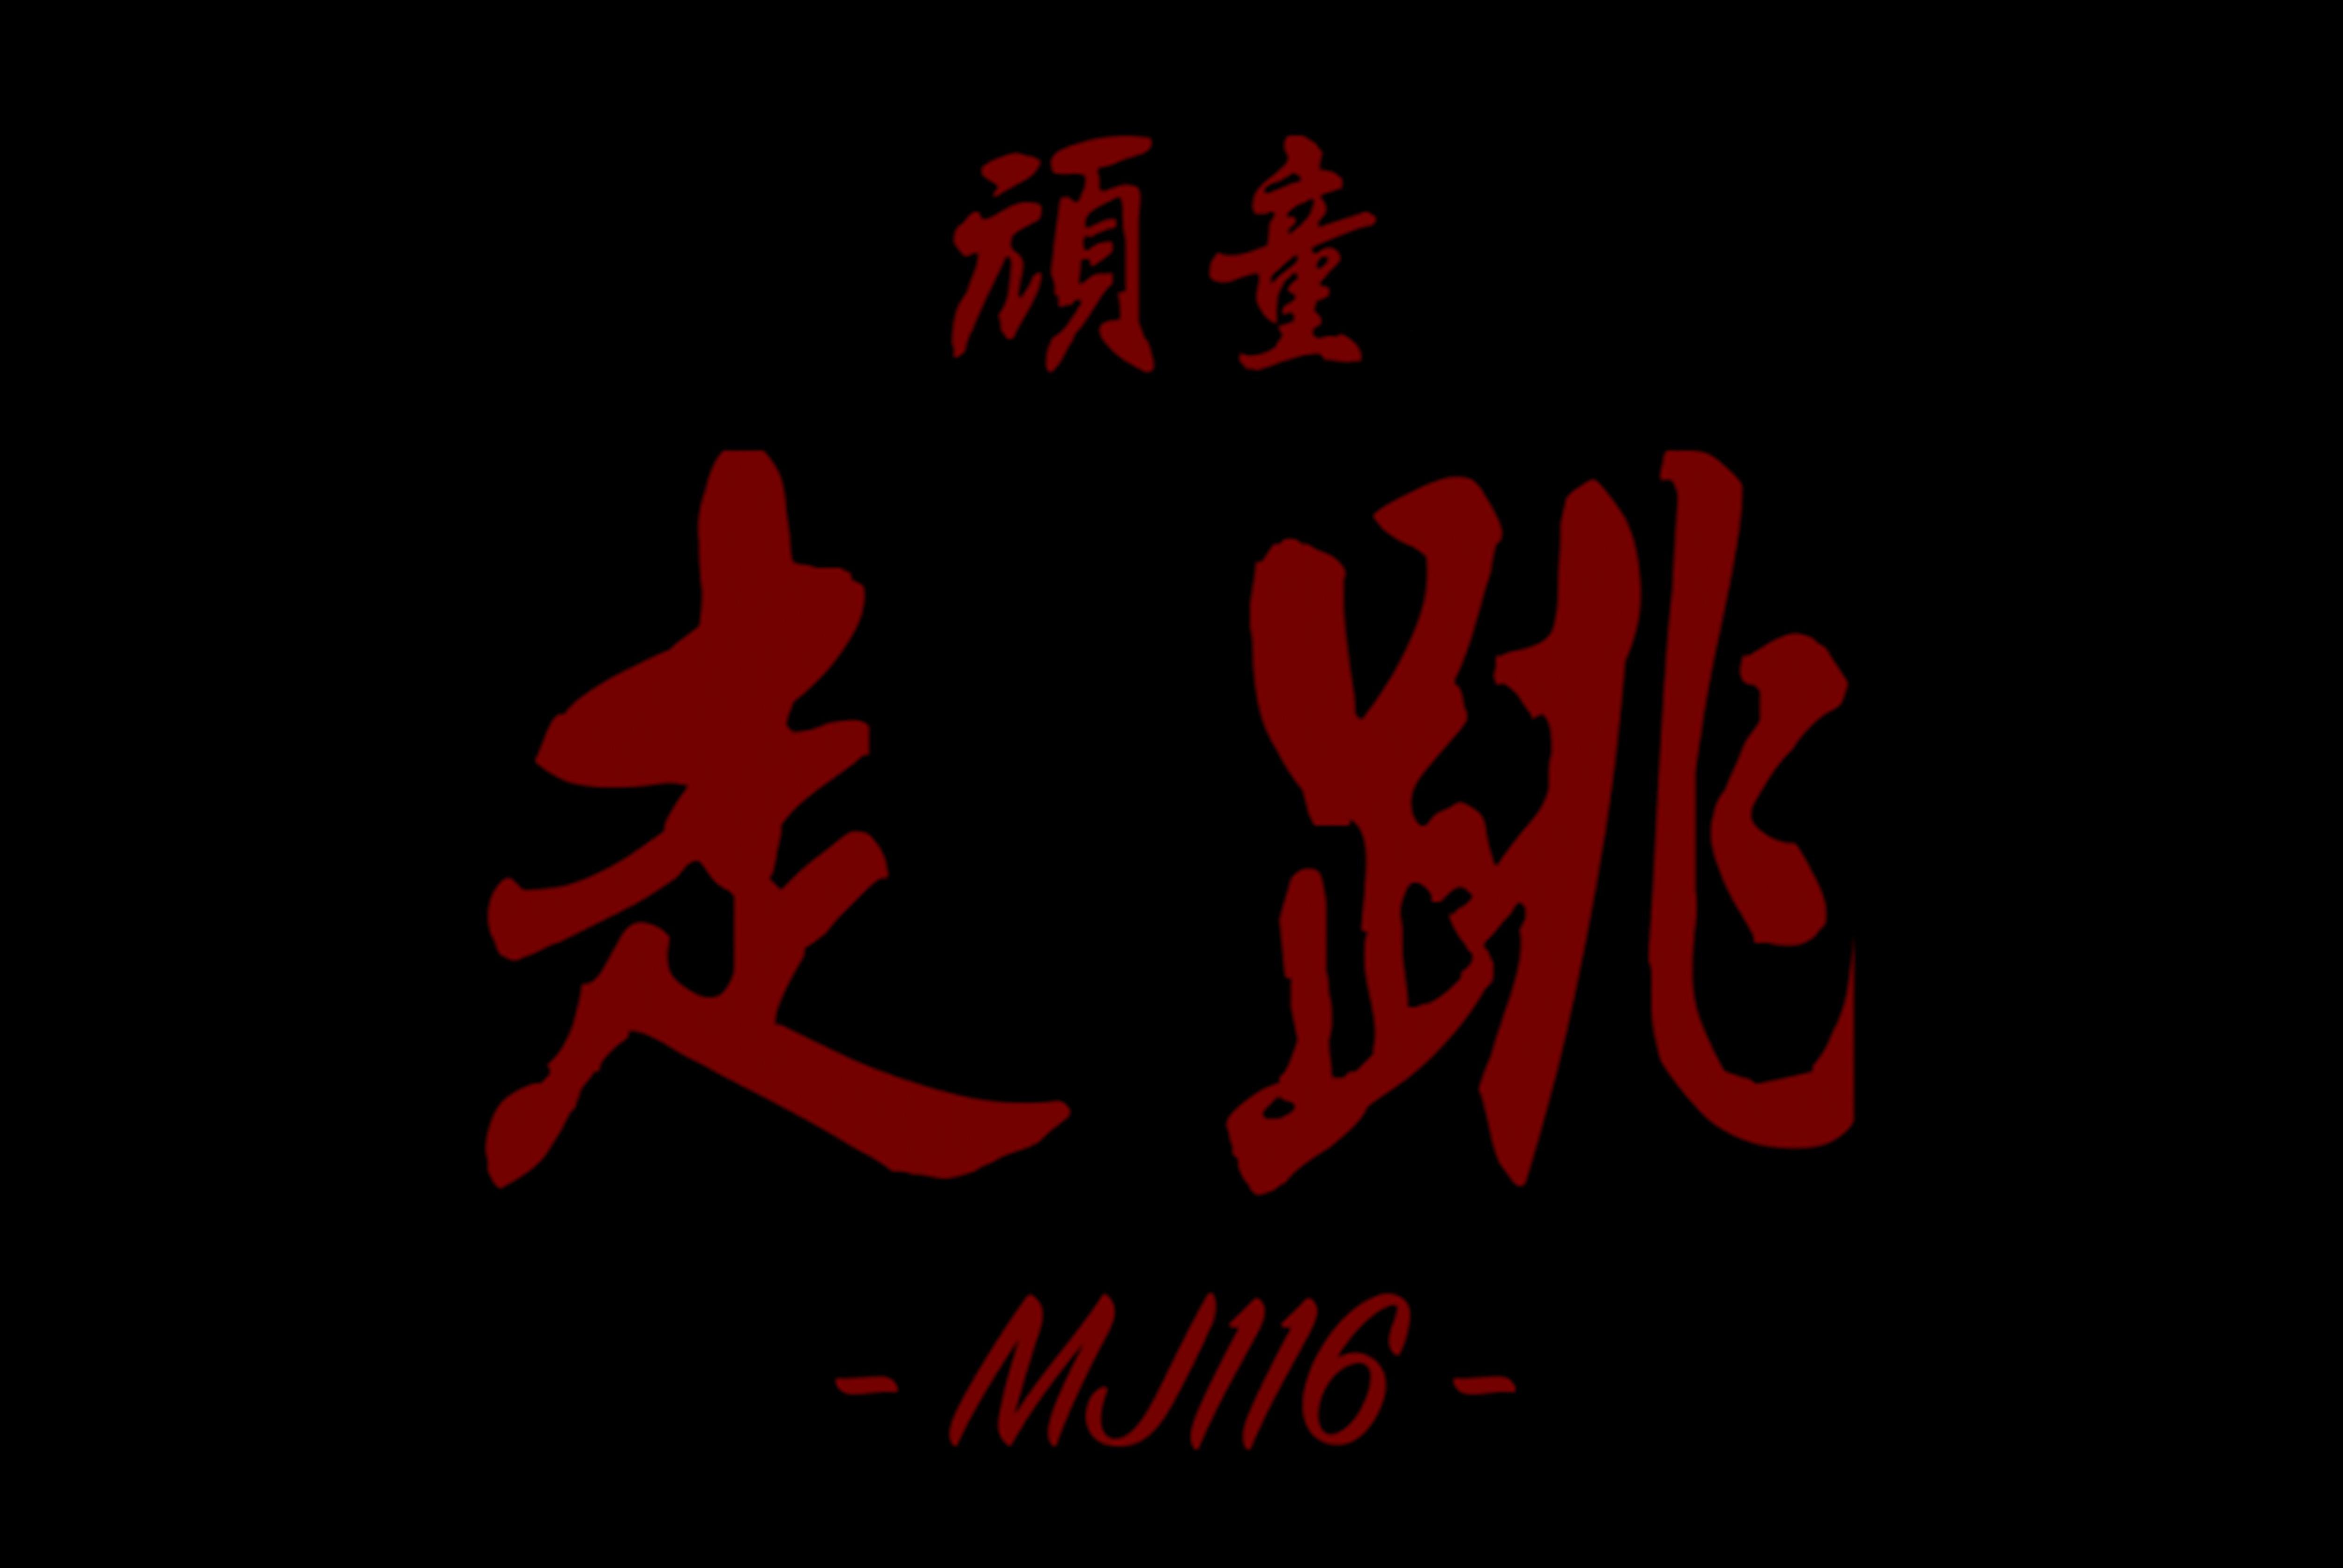 顽童mj116再推全新单曲《走跳》,闯荡十年从未曾变